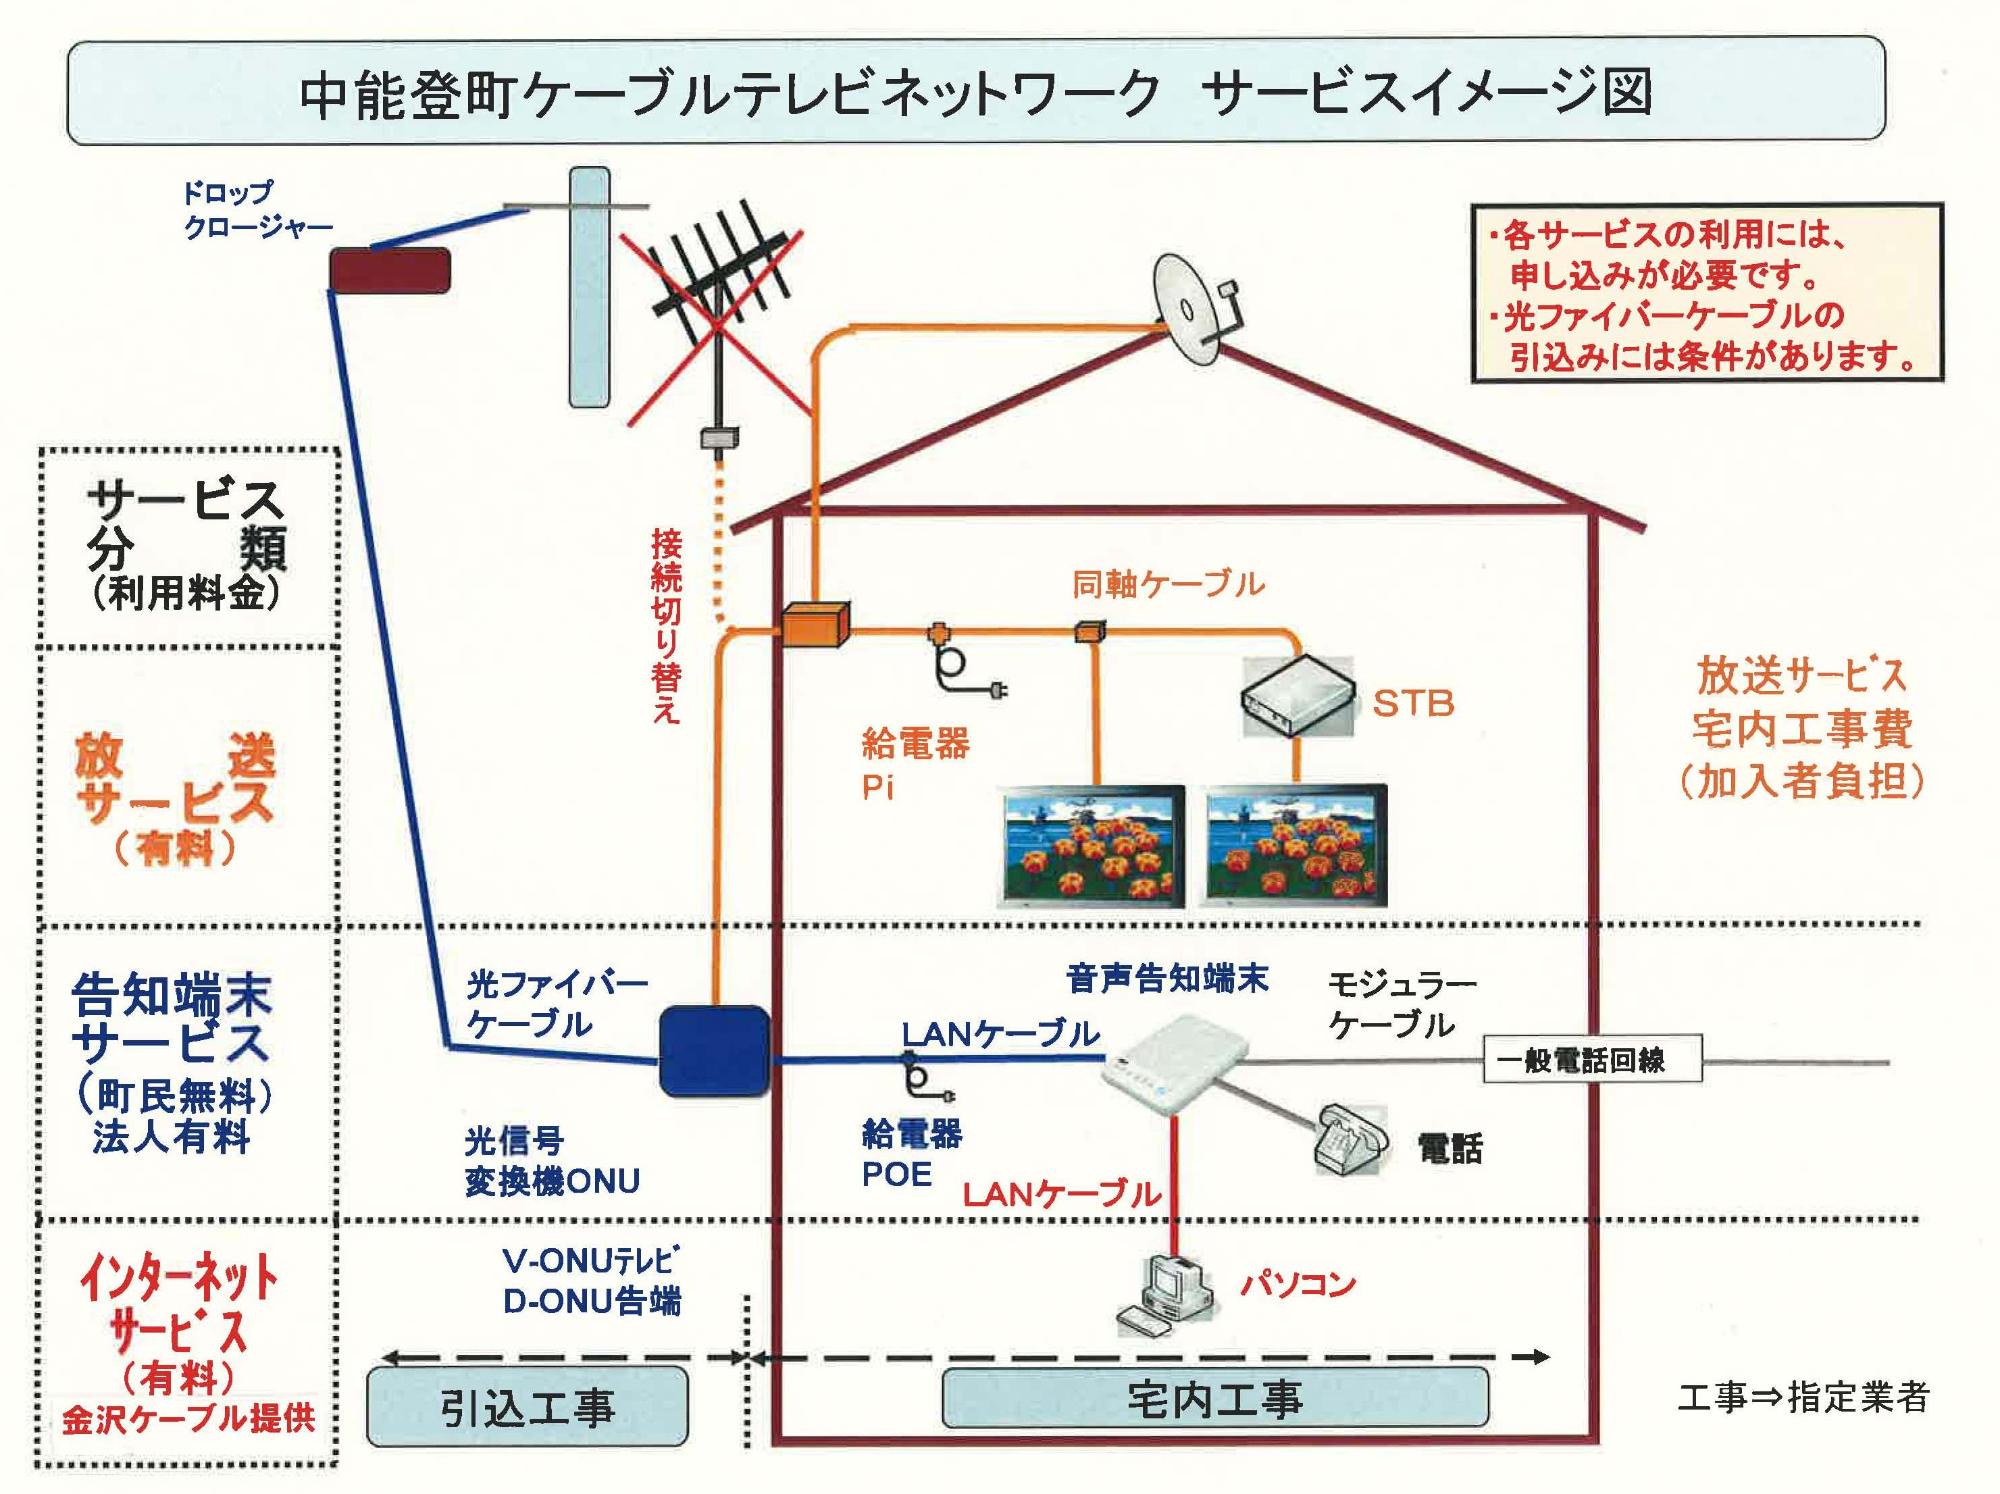 ケーブルテレビネットワークサービスイメージ図